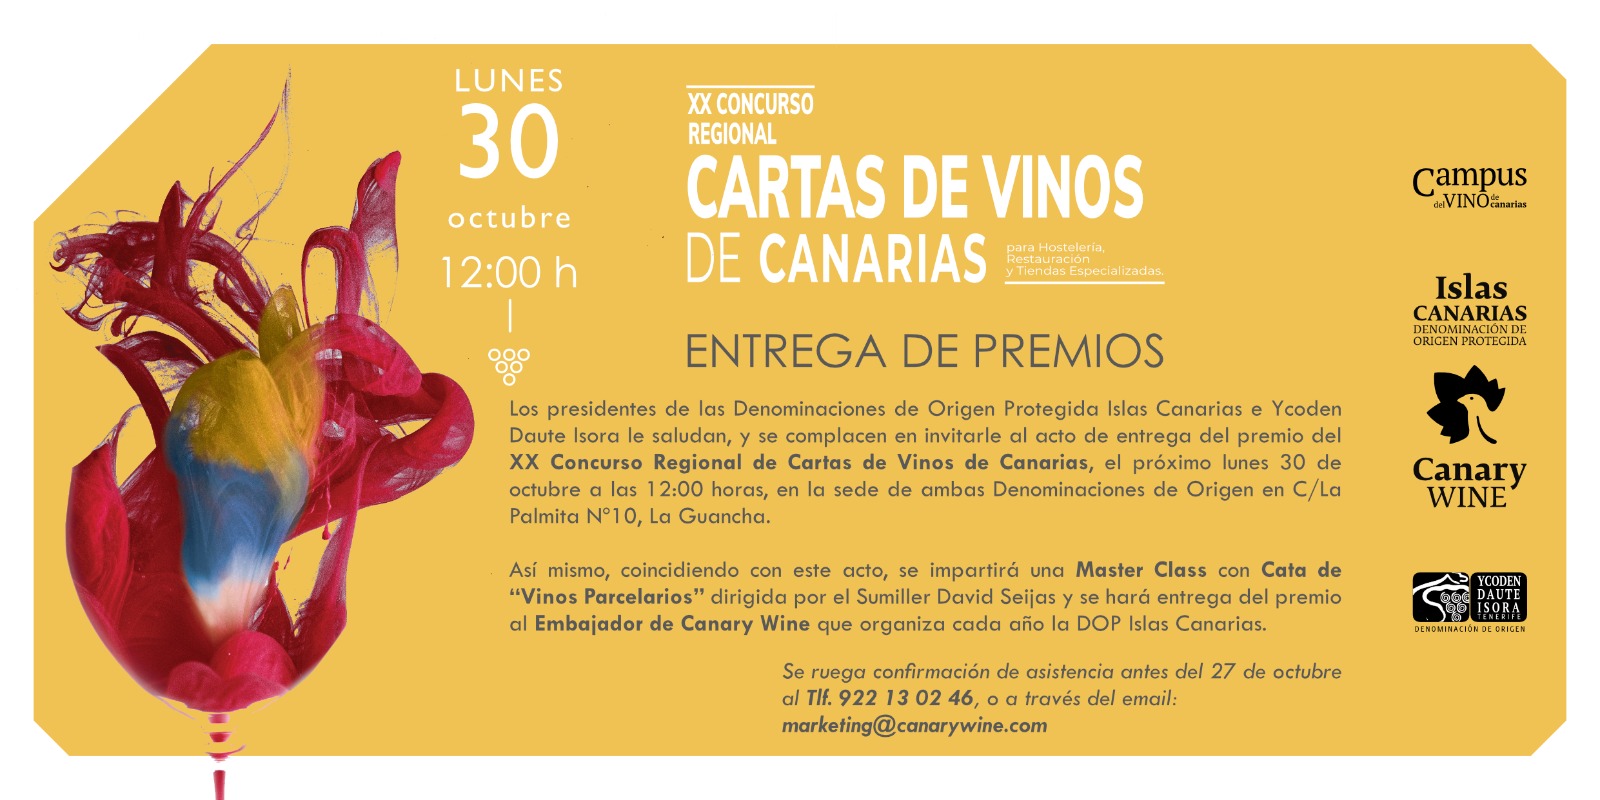 Entrega de Premios del XX Concurso Regional de “Cartas de Vinos de Canarias” para Hostelería, Restauración y Tiendas Especializadas